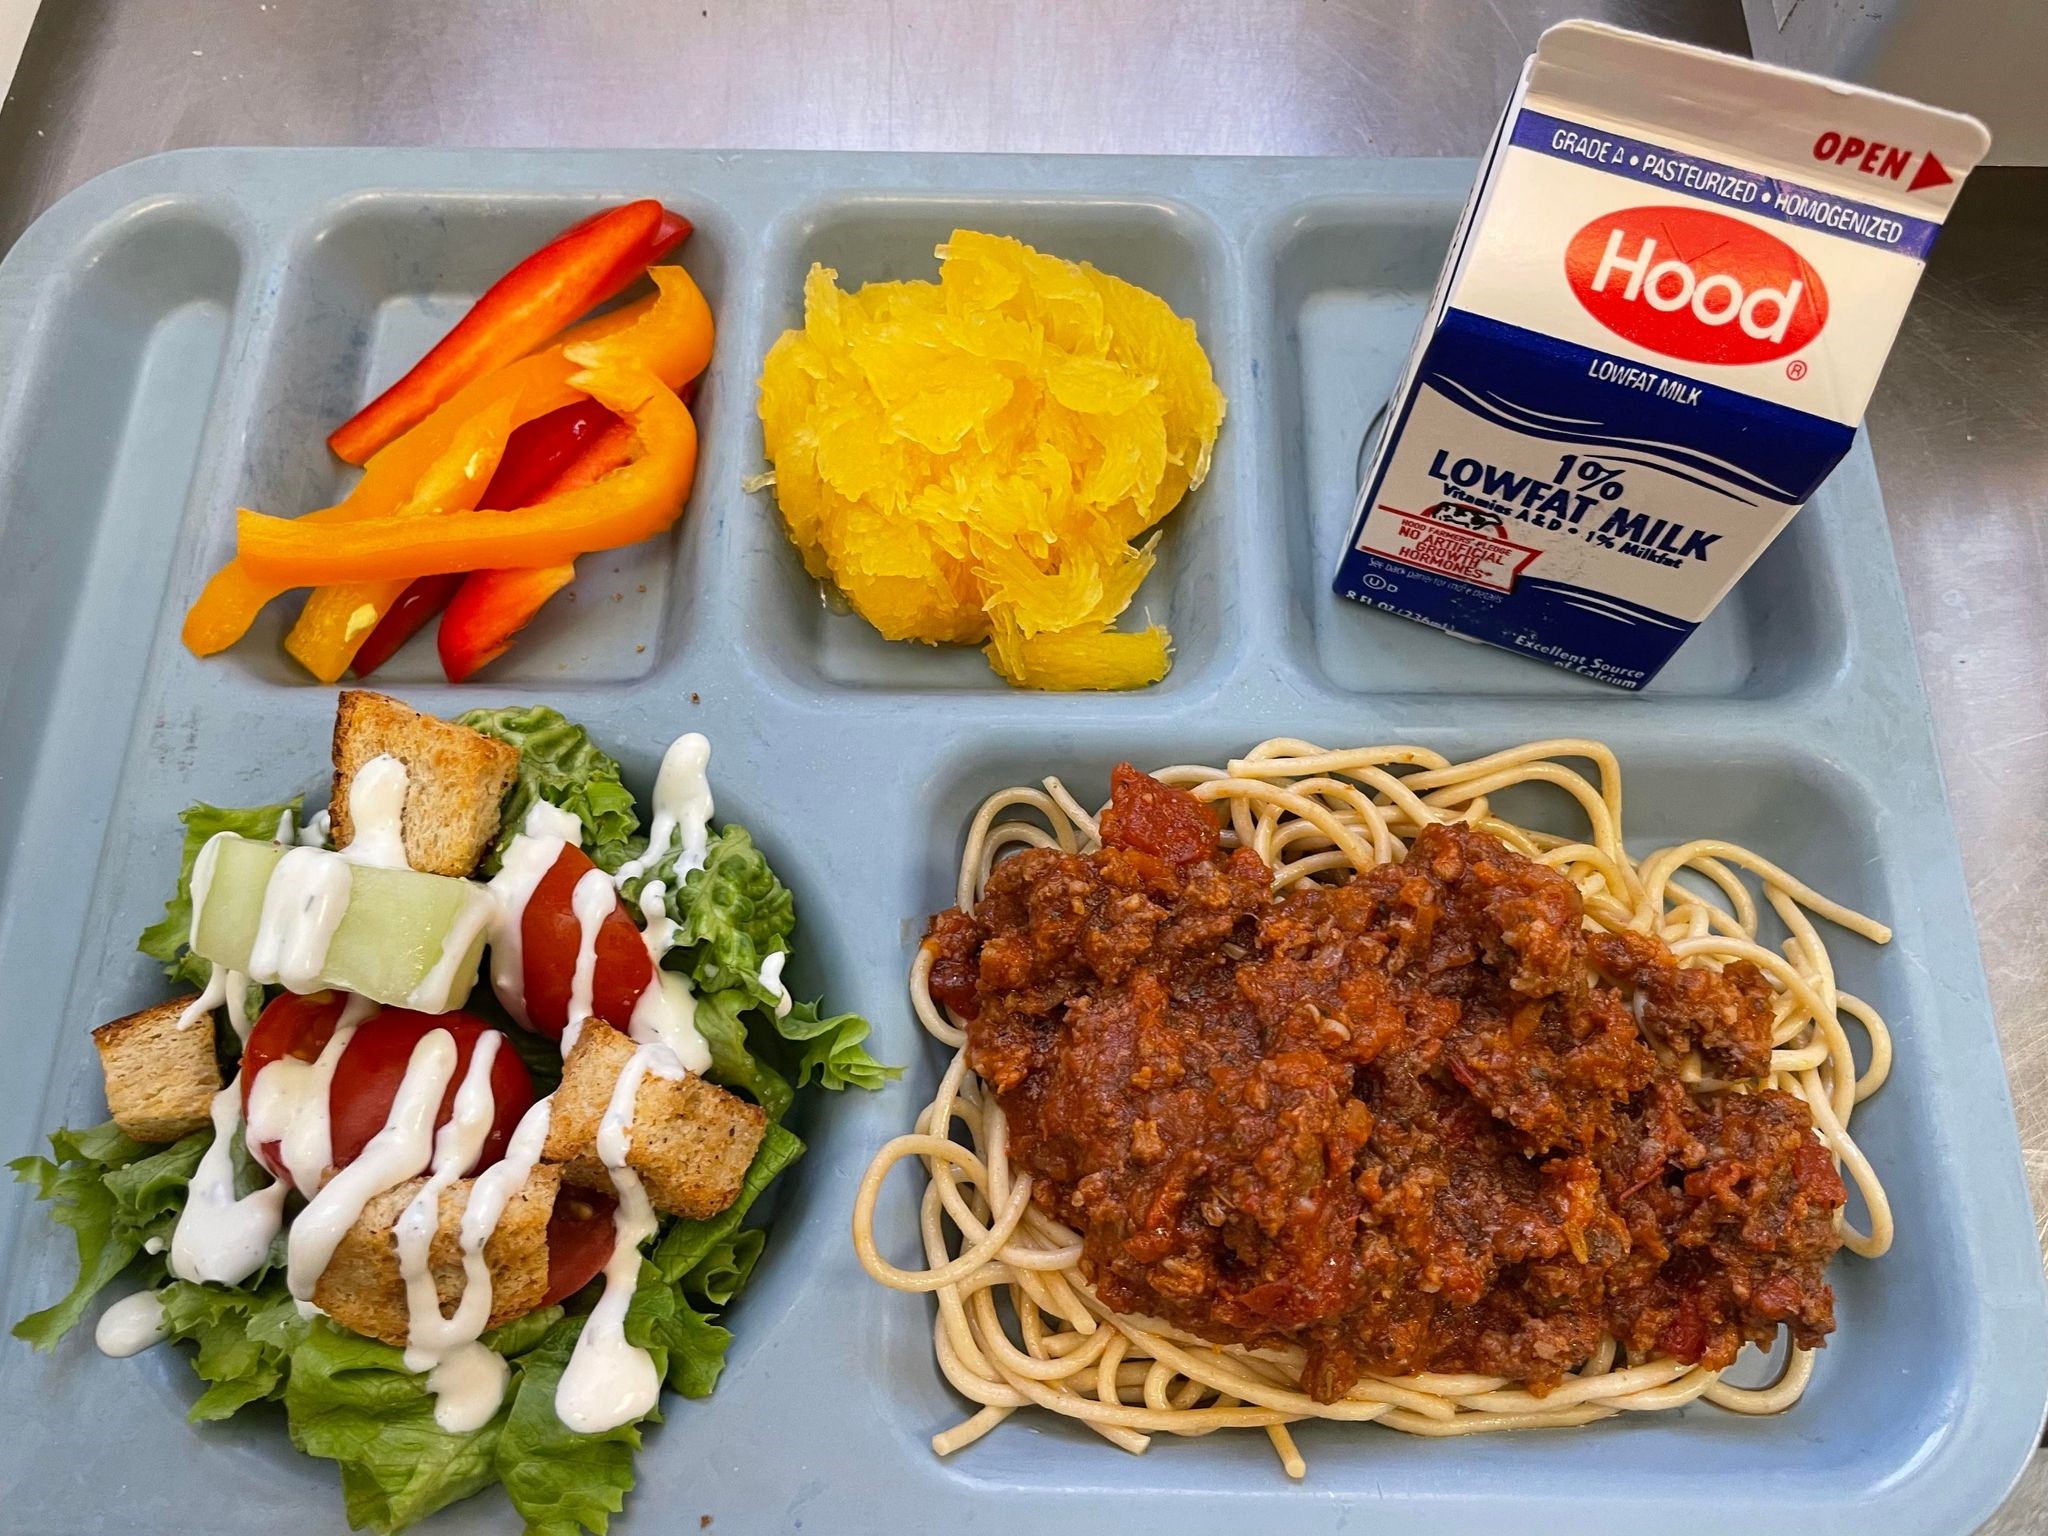 School meal